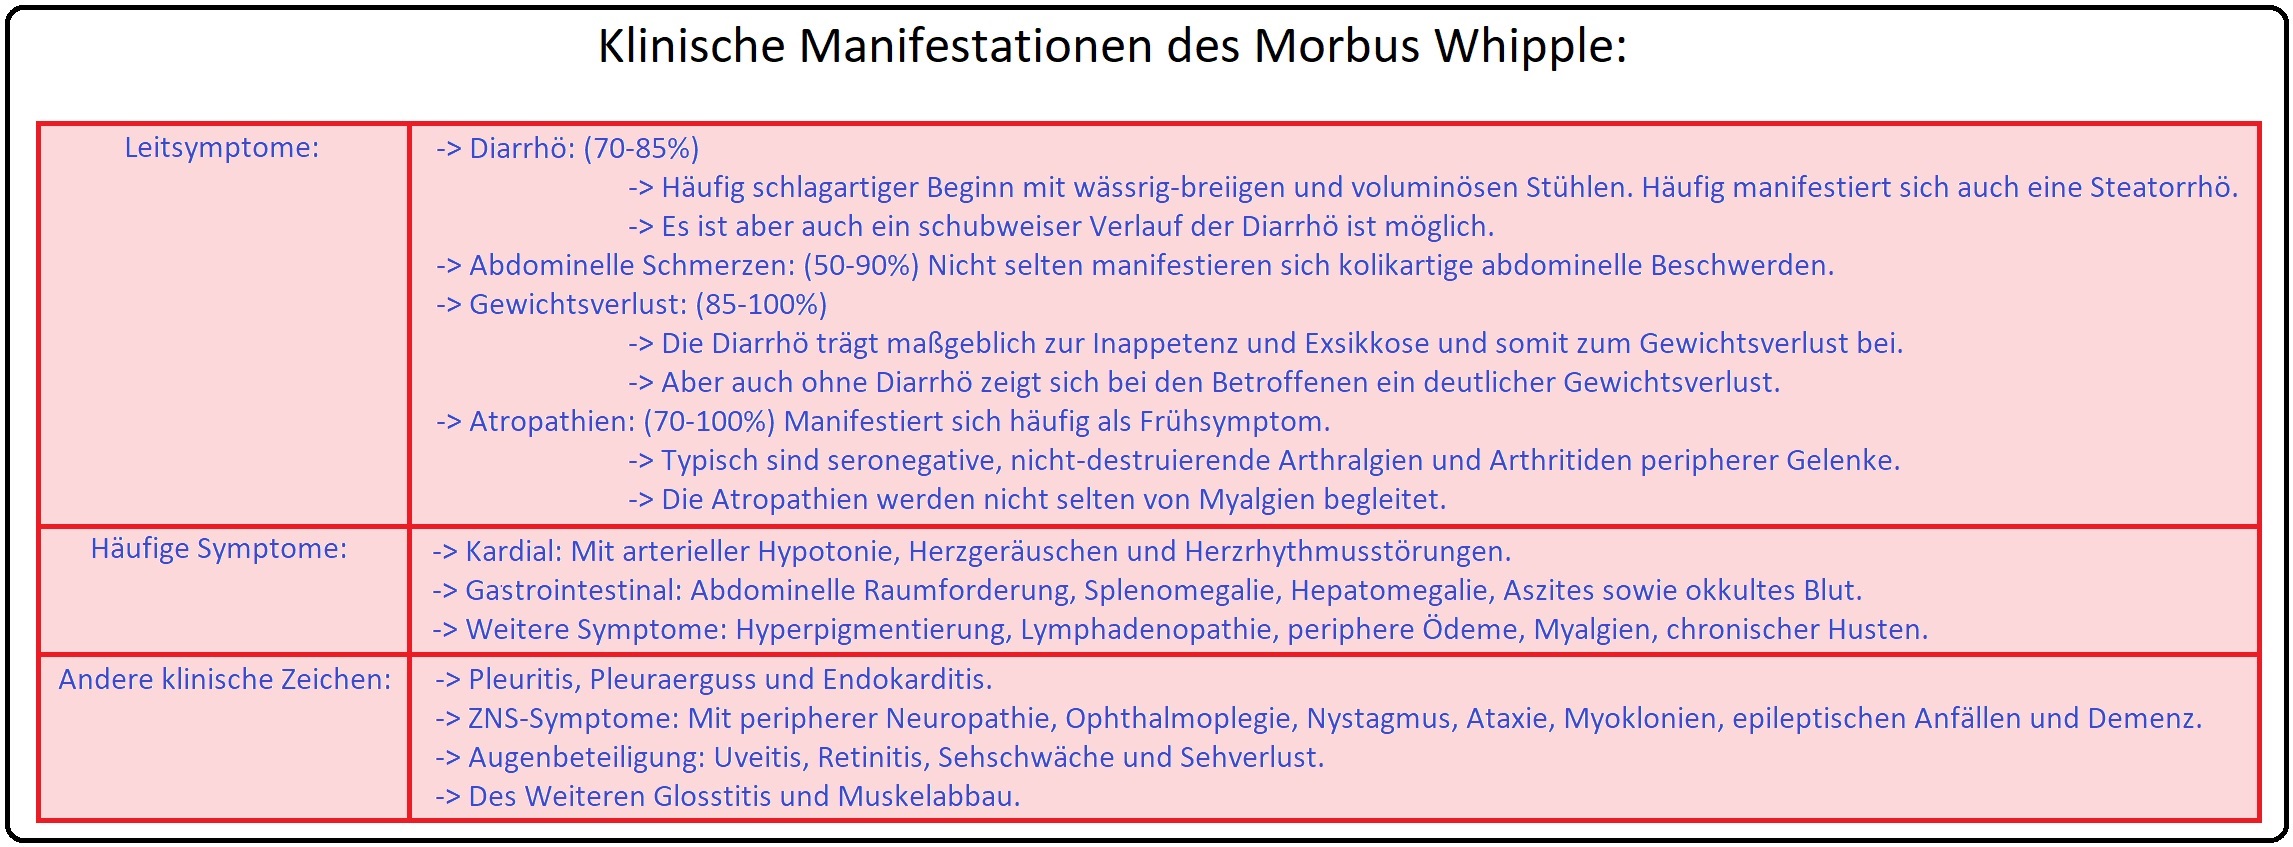 939 Klinische Manifestationen des Morbus Whipple